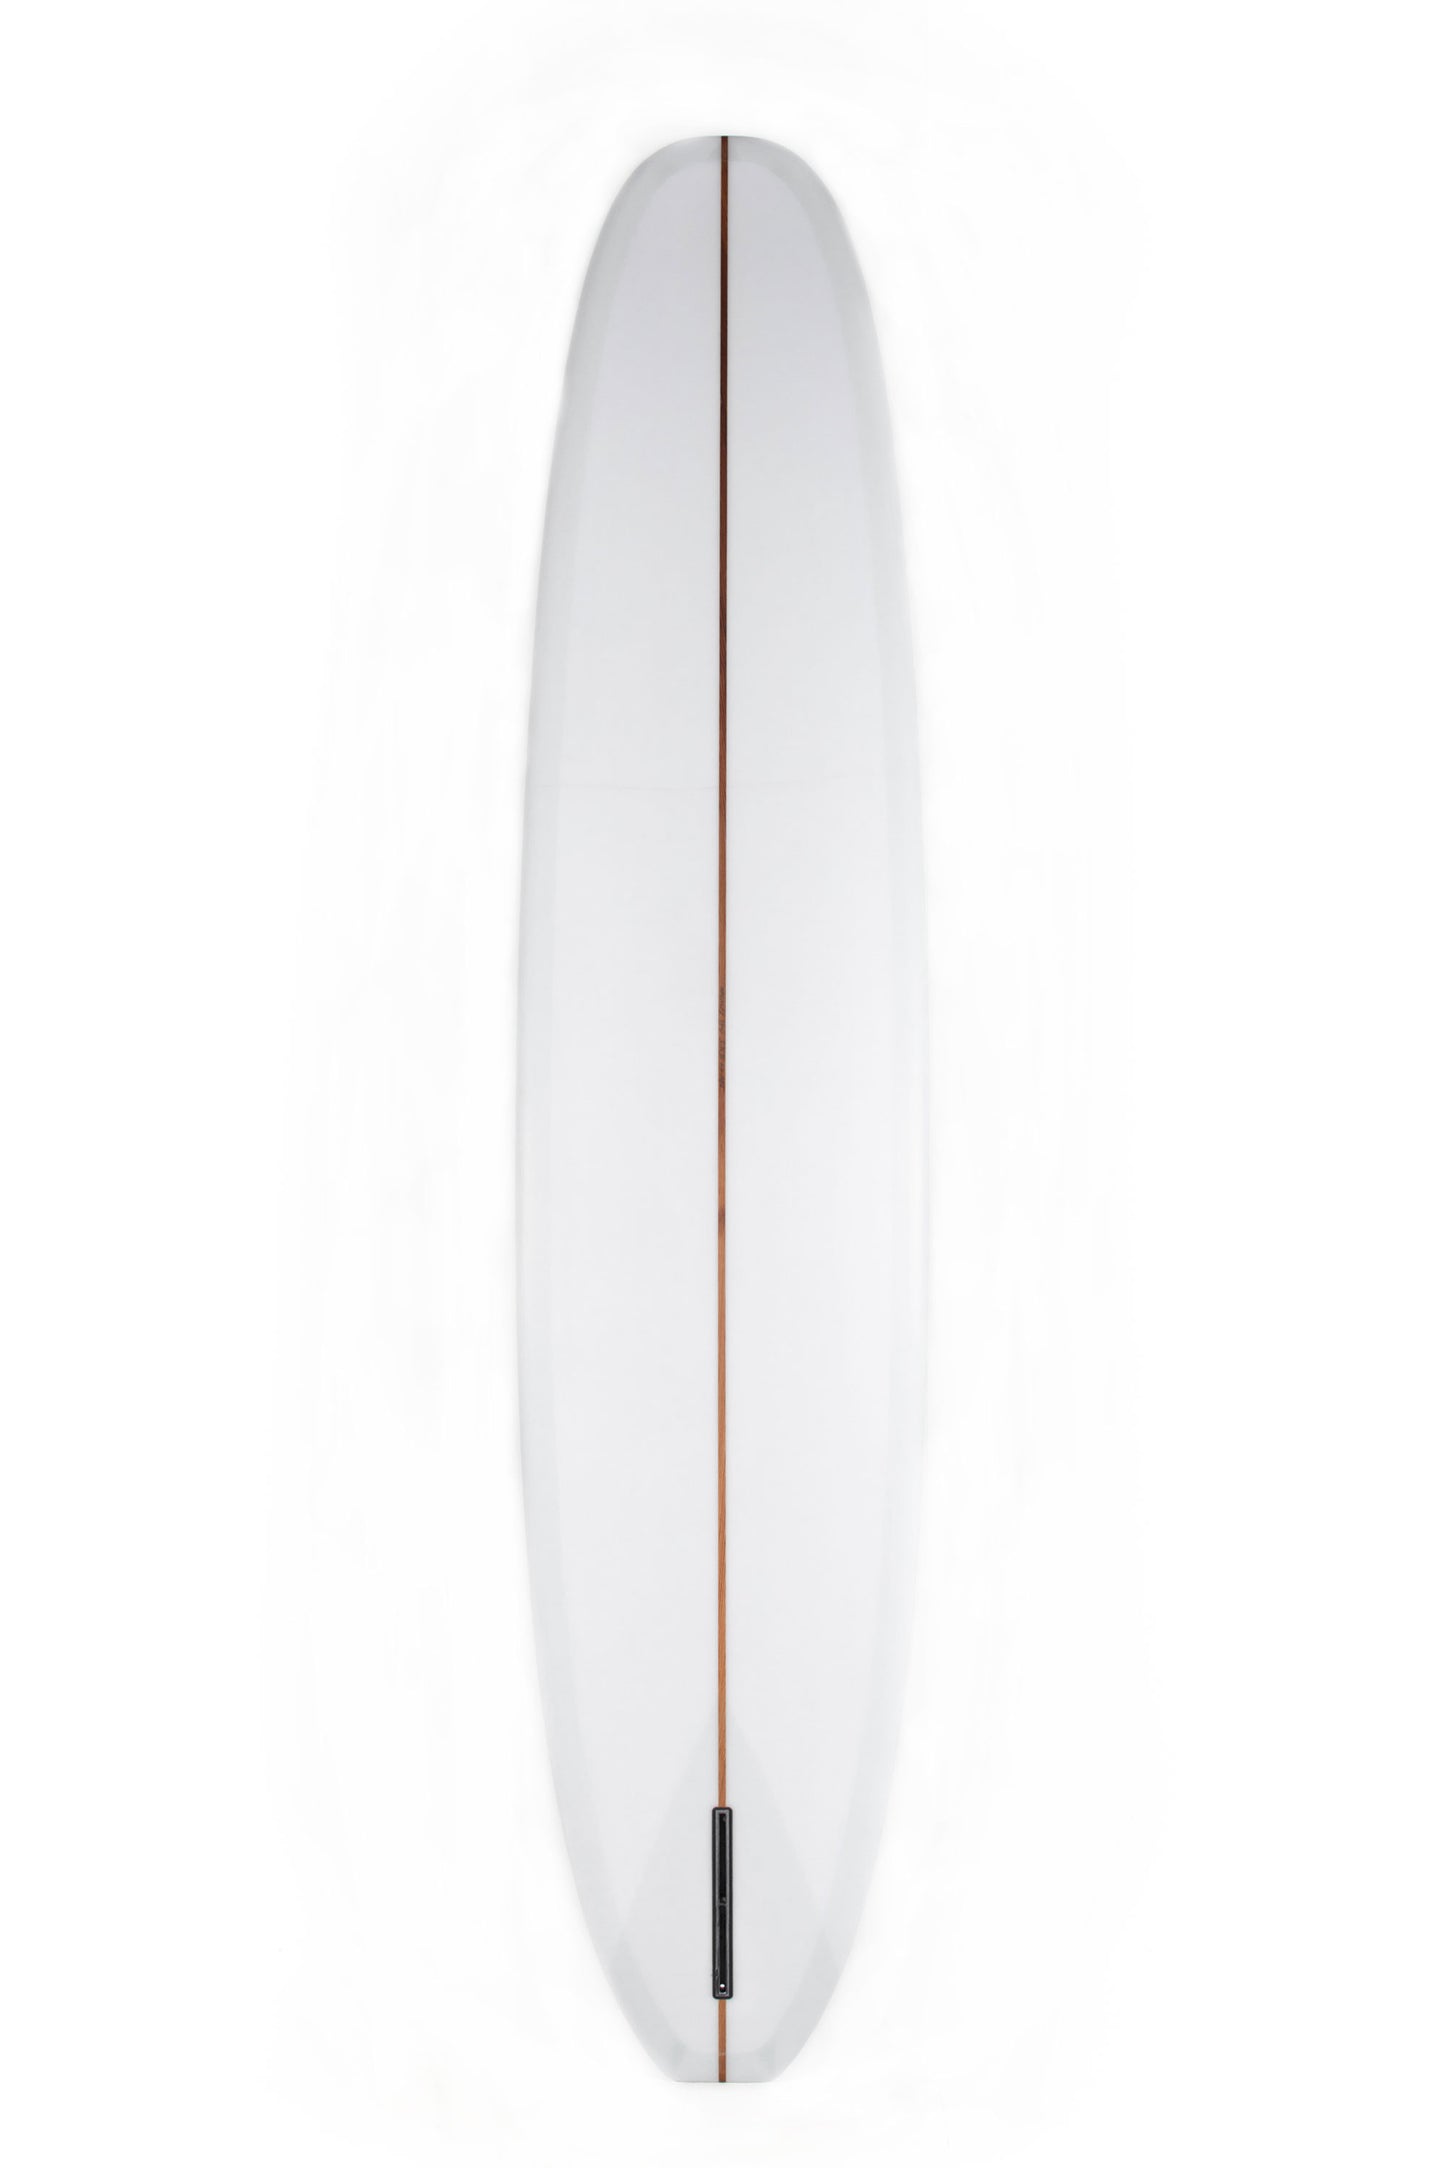 Pukas Surf Shop - Adrokultura Surfboards - BOB'S - 9'4" x 22 7/8 x 3 - BOBS94